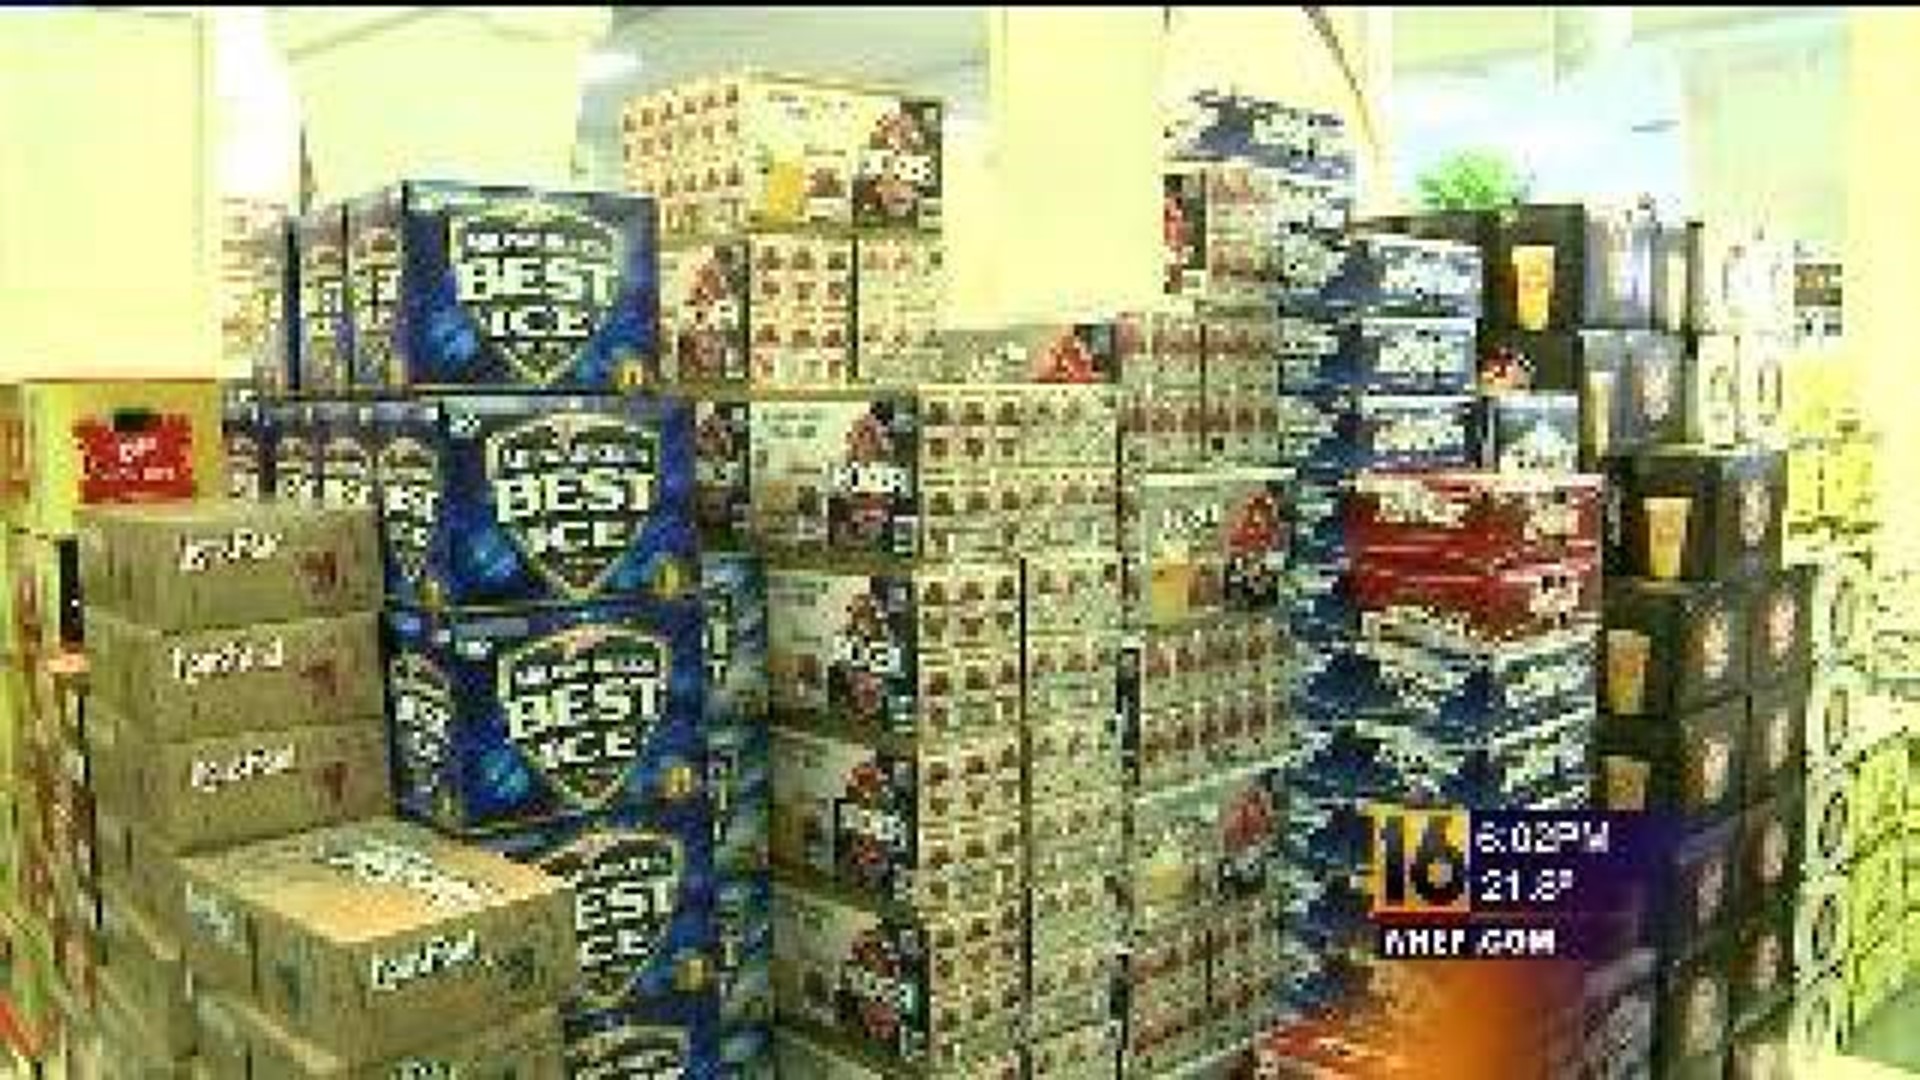 Beer Distributors Criticize Gov. Corbett’s Privatization Plan